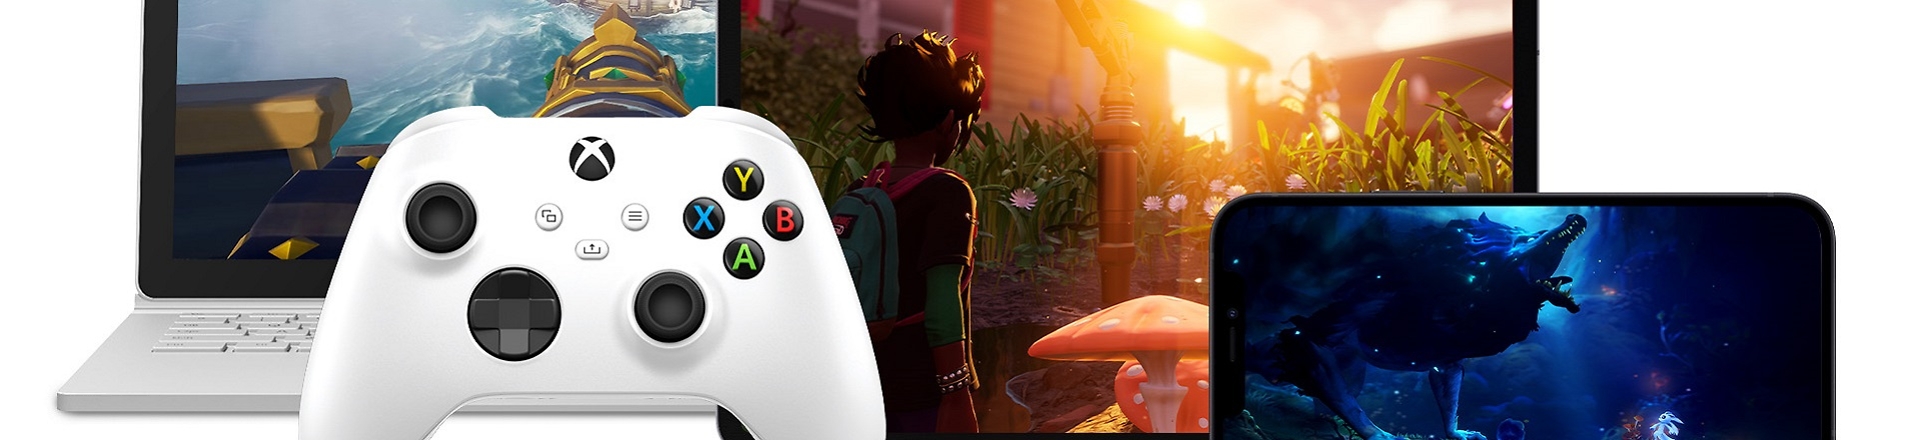 Xbox Game Pass Ultimate: Die Spiele im November und Dezember